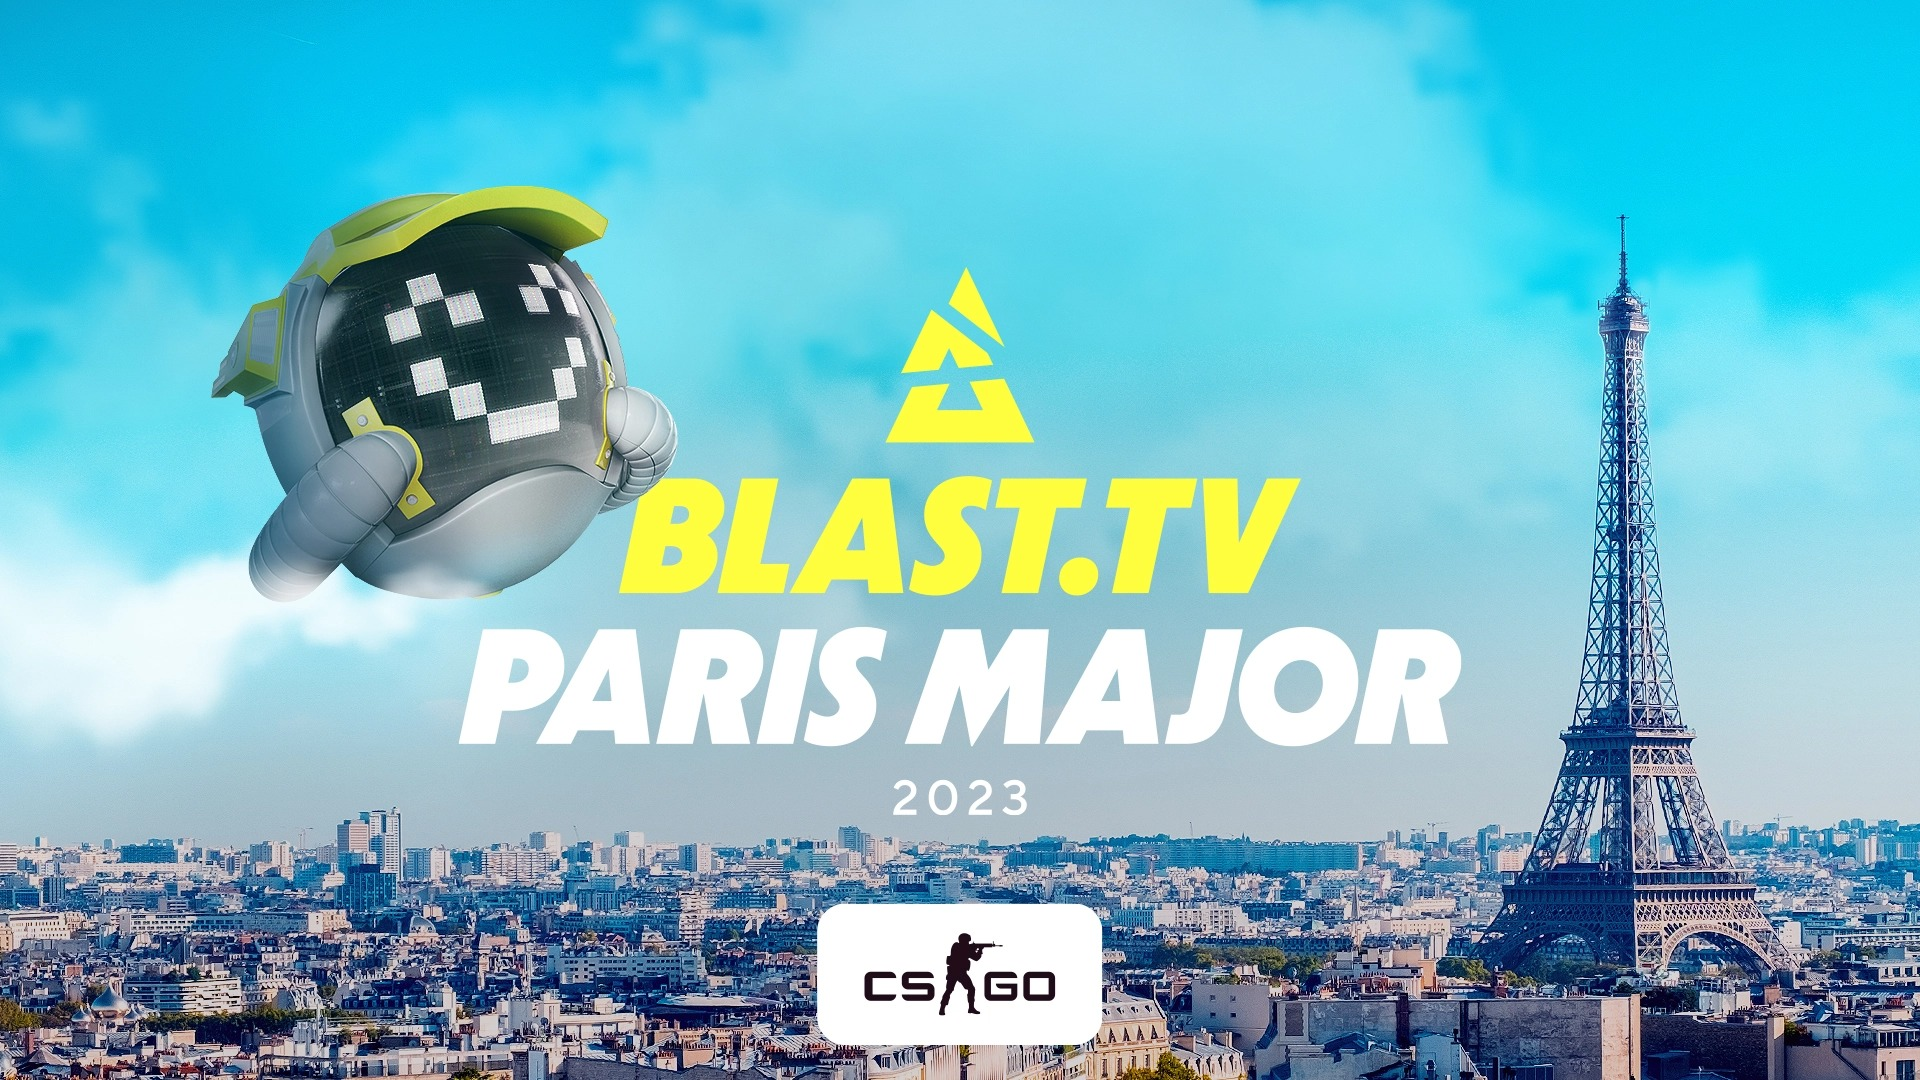 Анонс BLAST.tv Paris Major 2023. Как пройдёт последний мейджор по CS:GO?